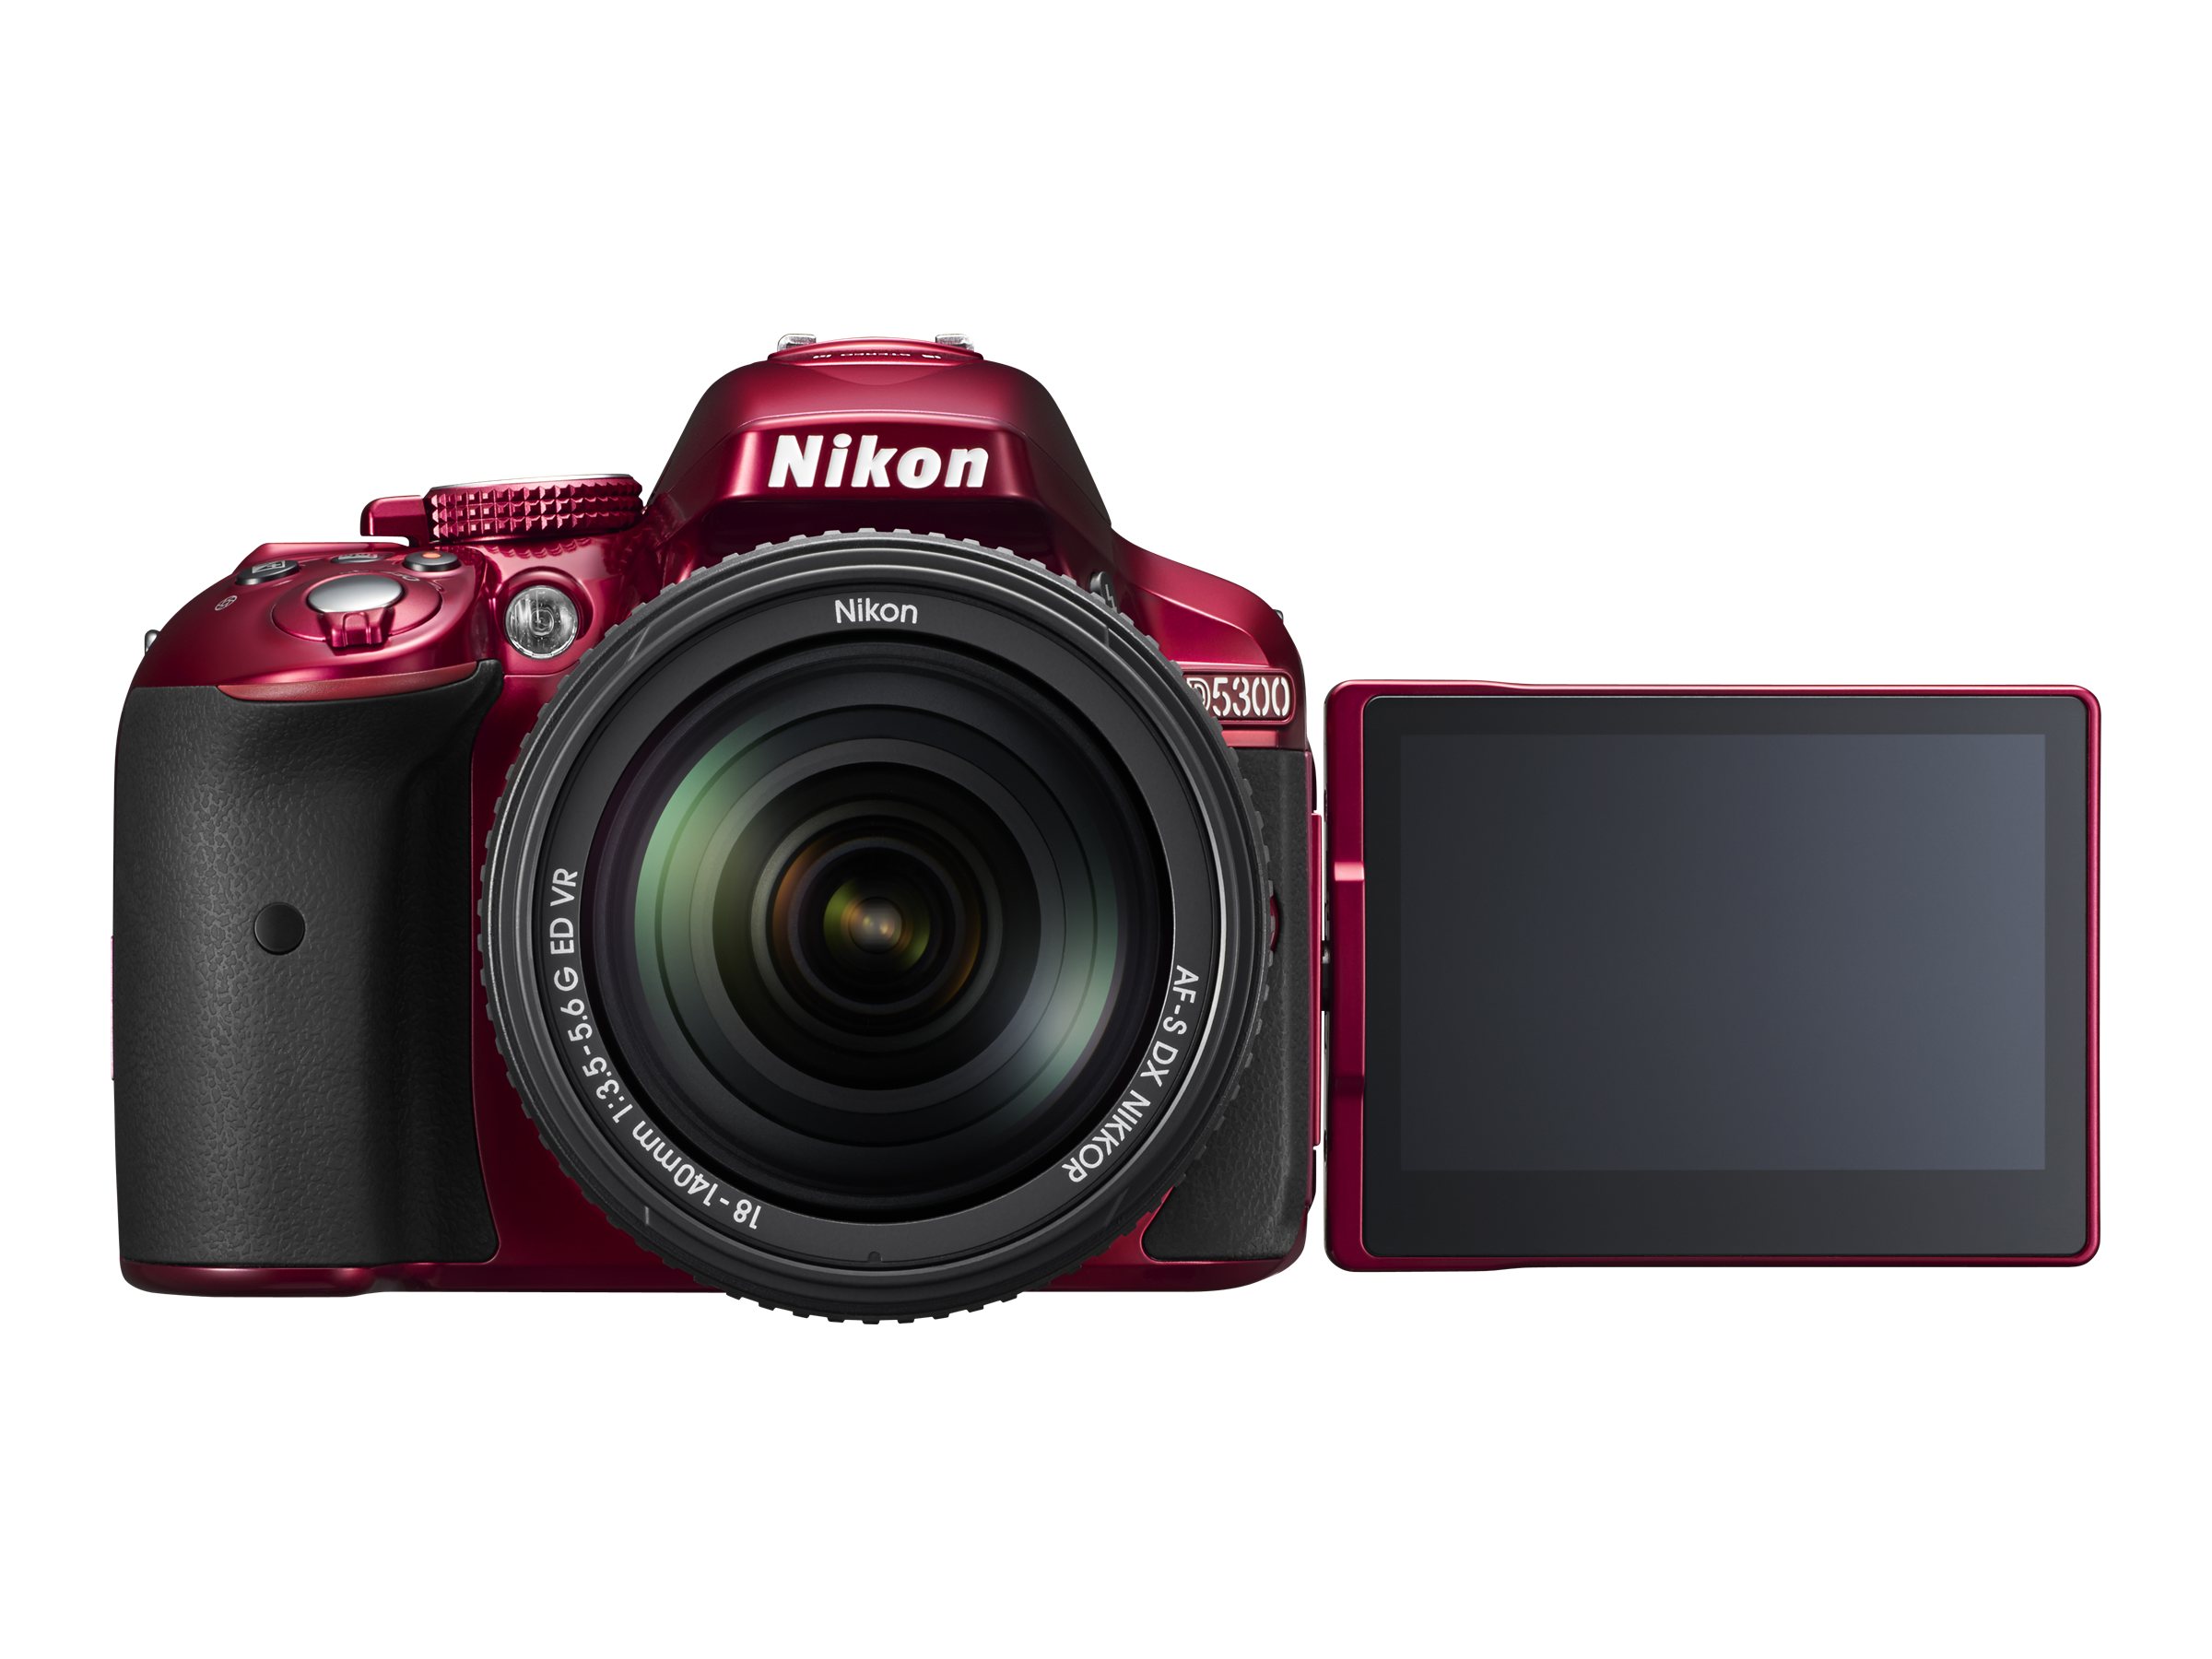 Nikon D5300 + AF-S VR DX 18-55mm Specifications, Tests and